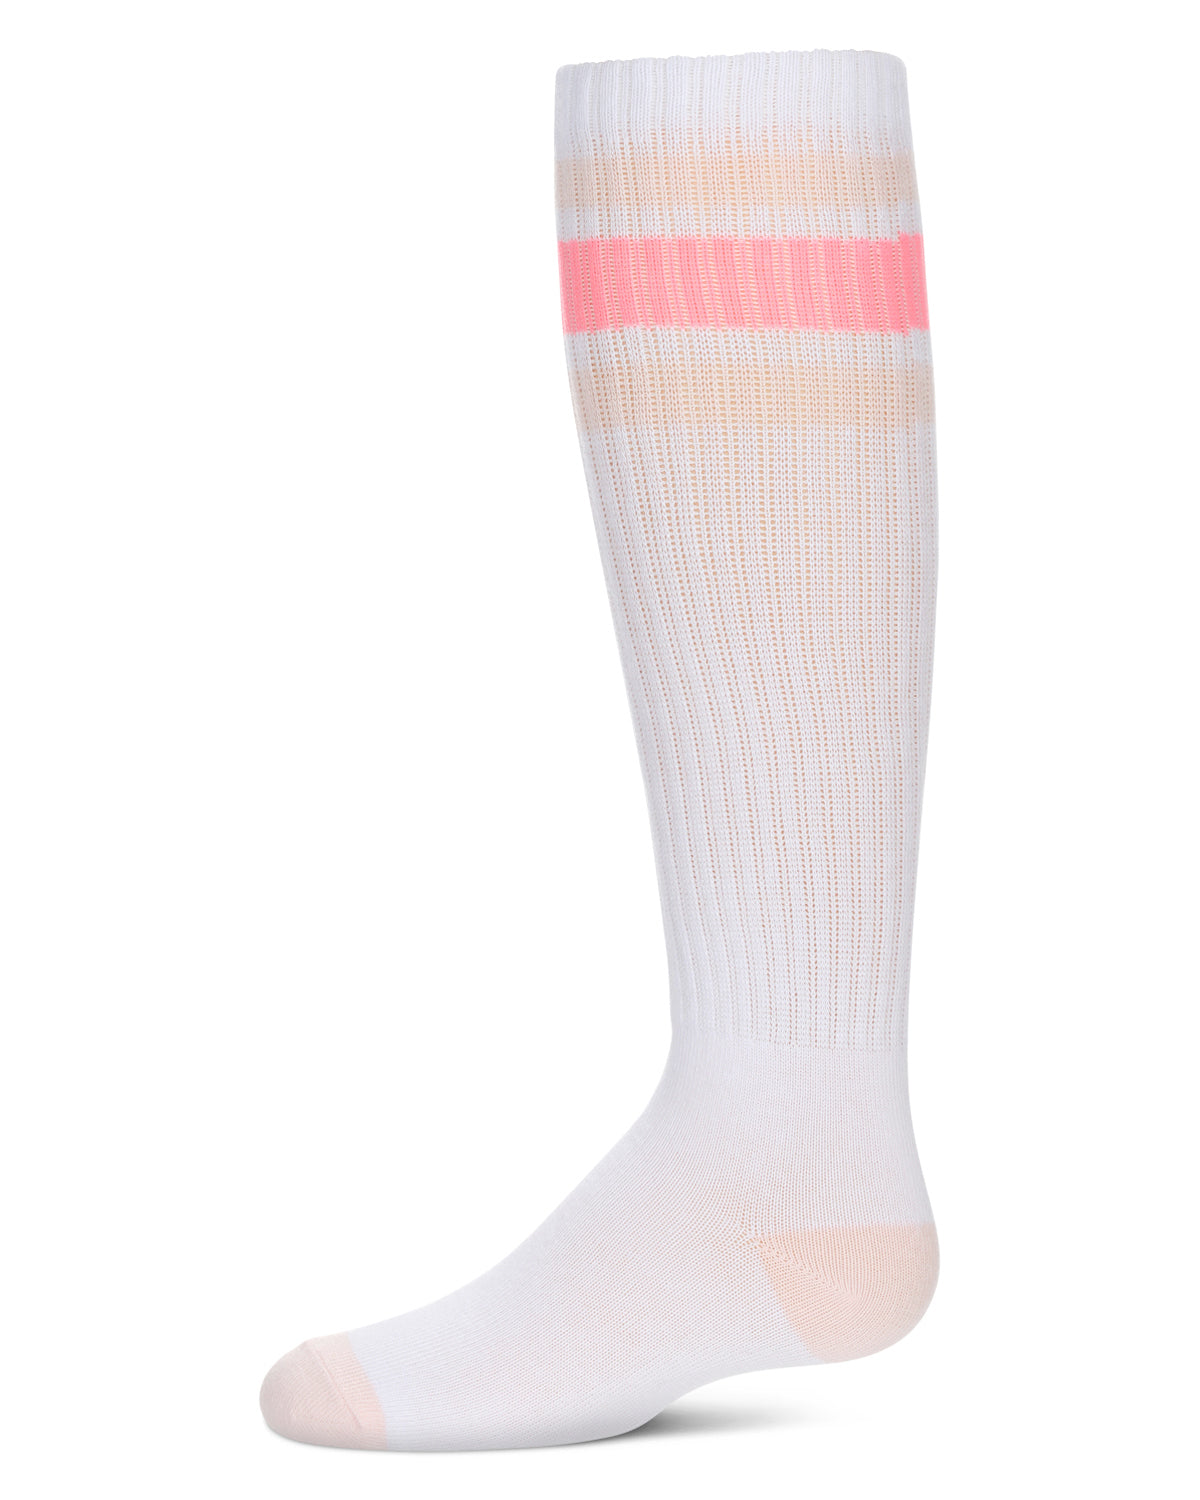 Girls' Neon Stripe Knee High Socks